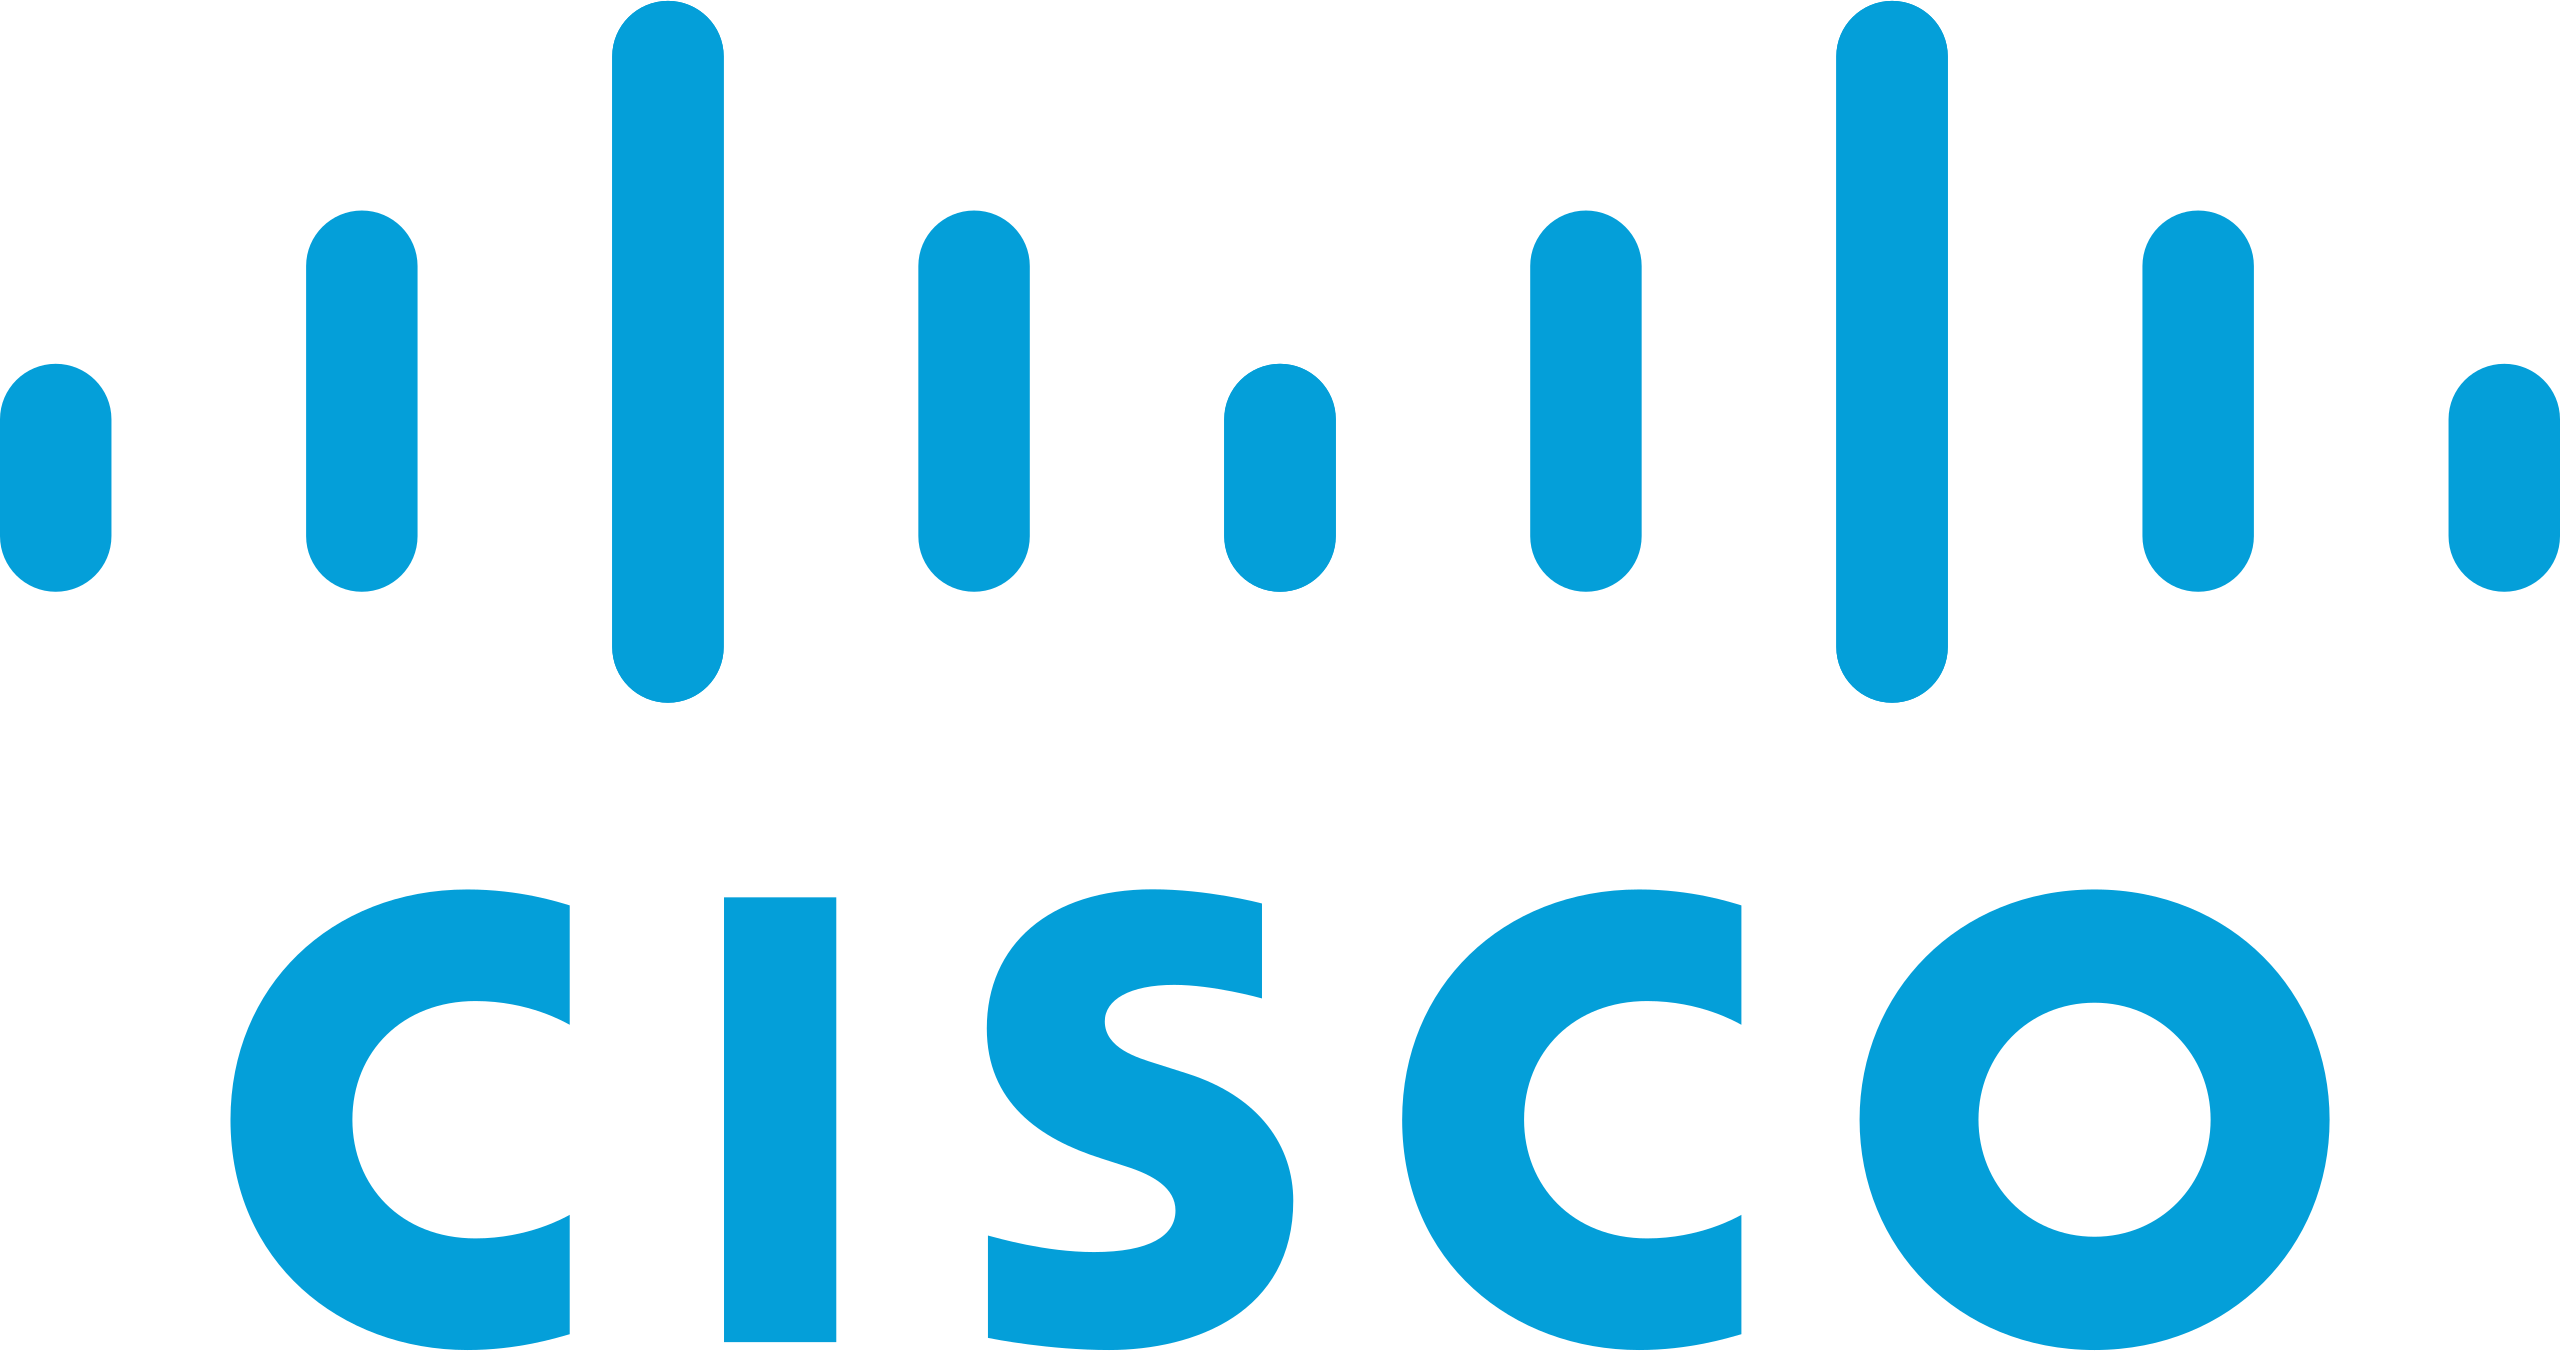 Cisco_logo_blue